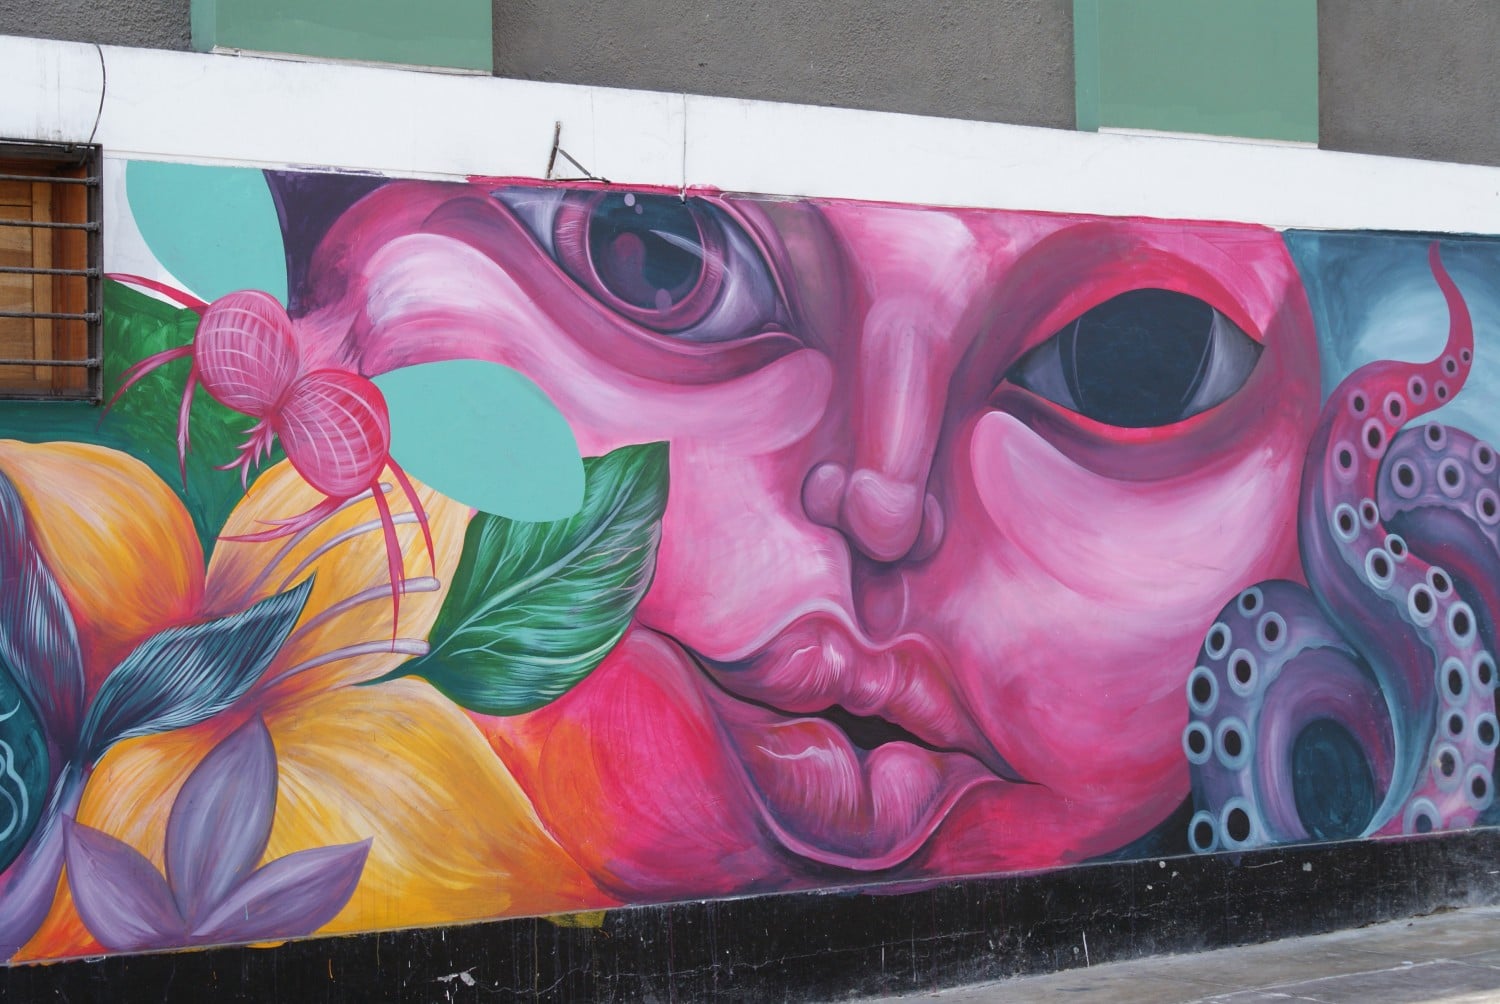 Street art in Barranco